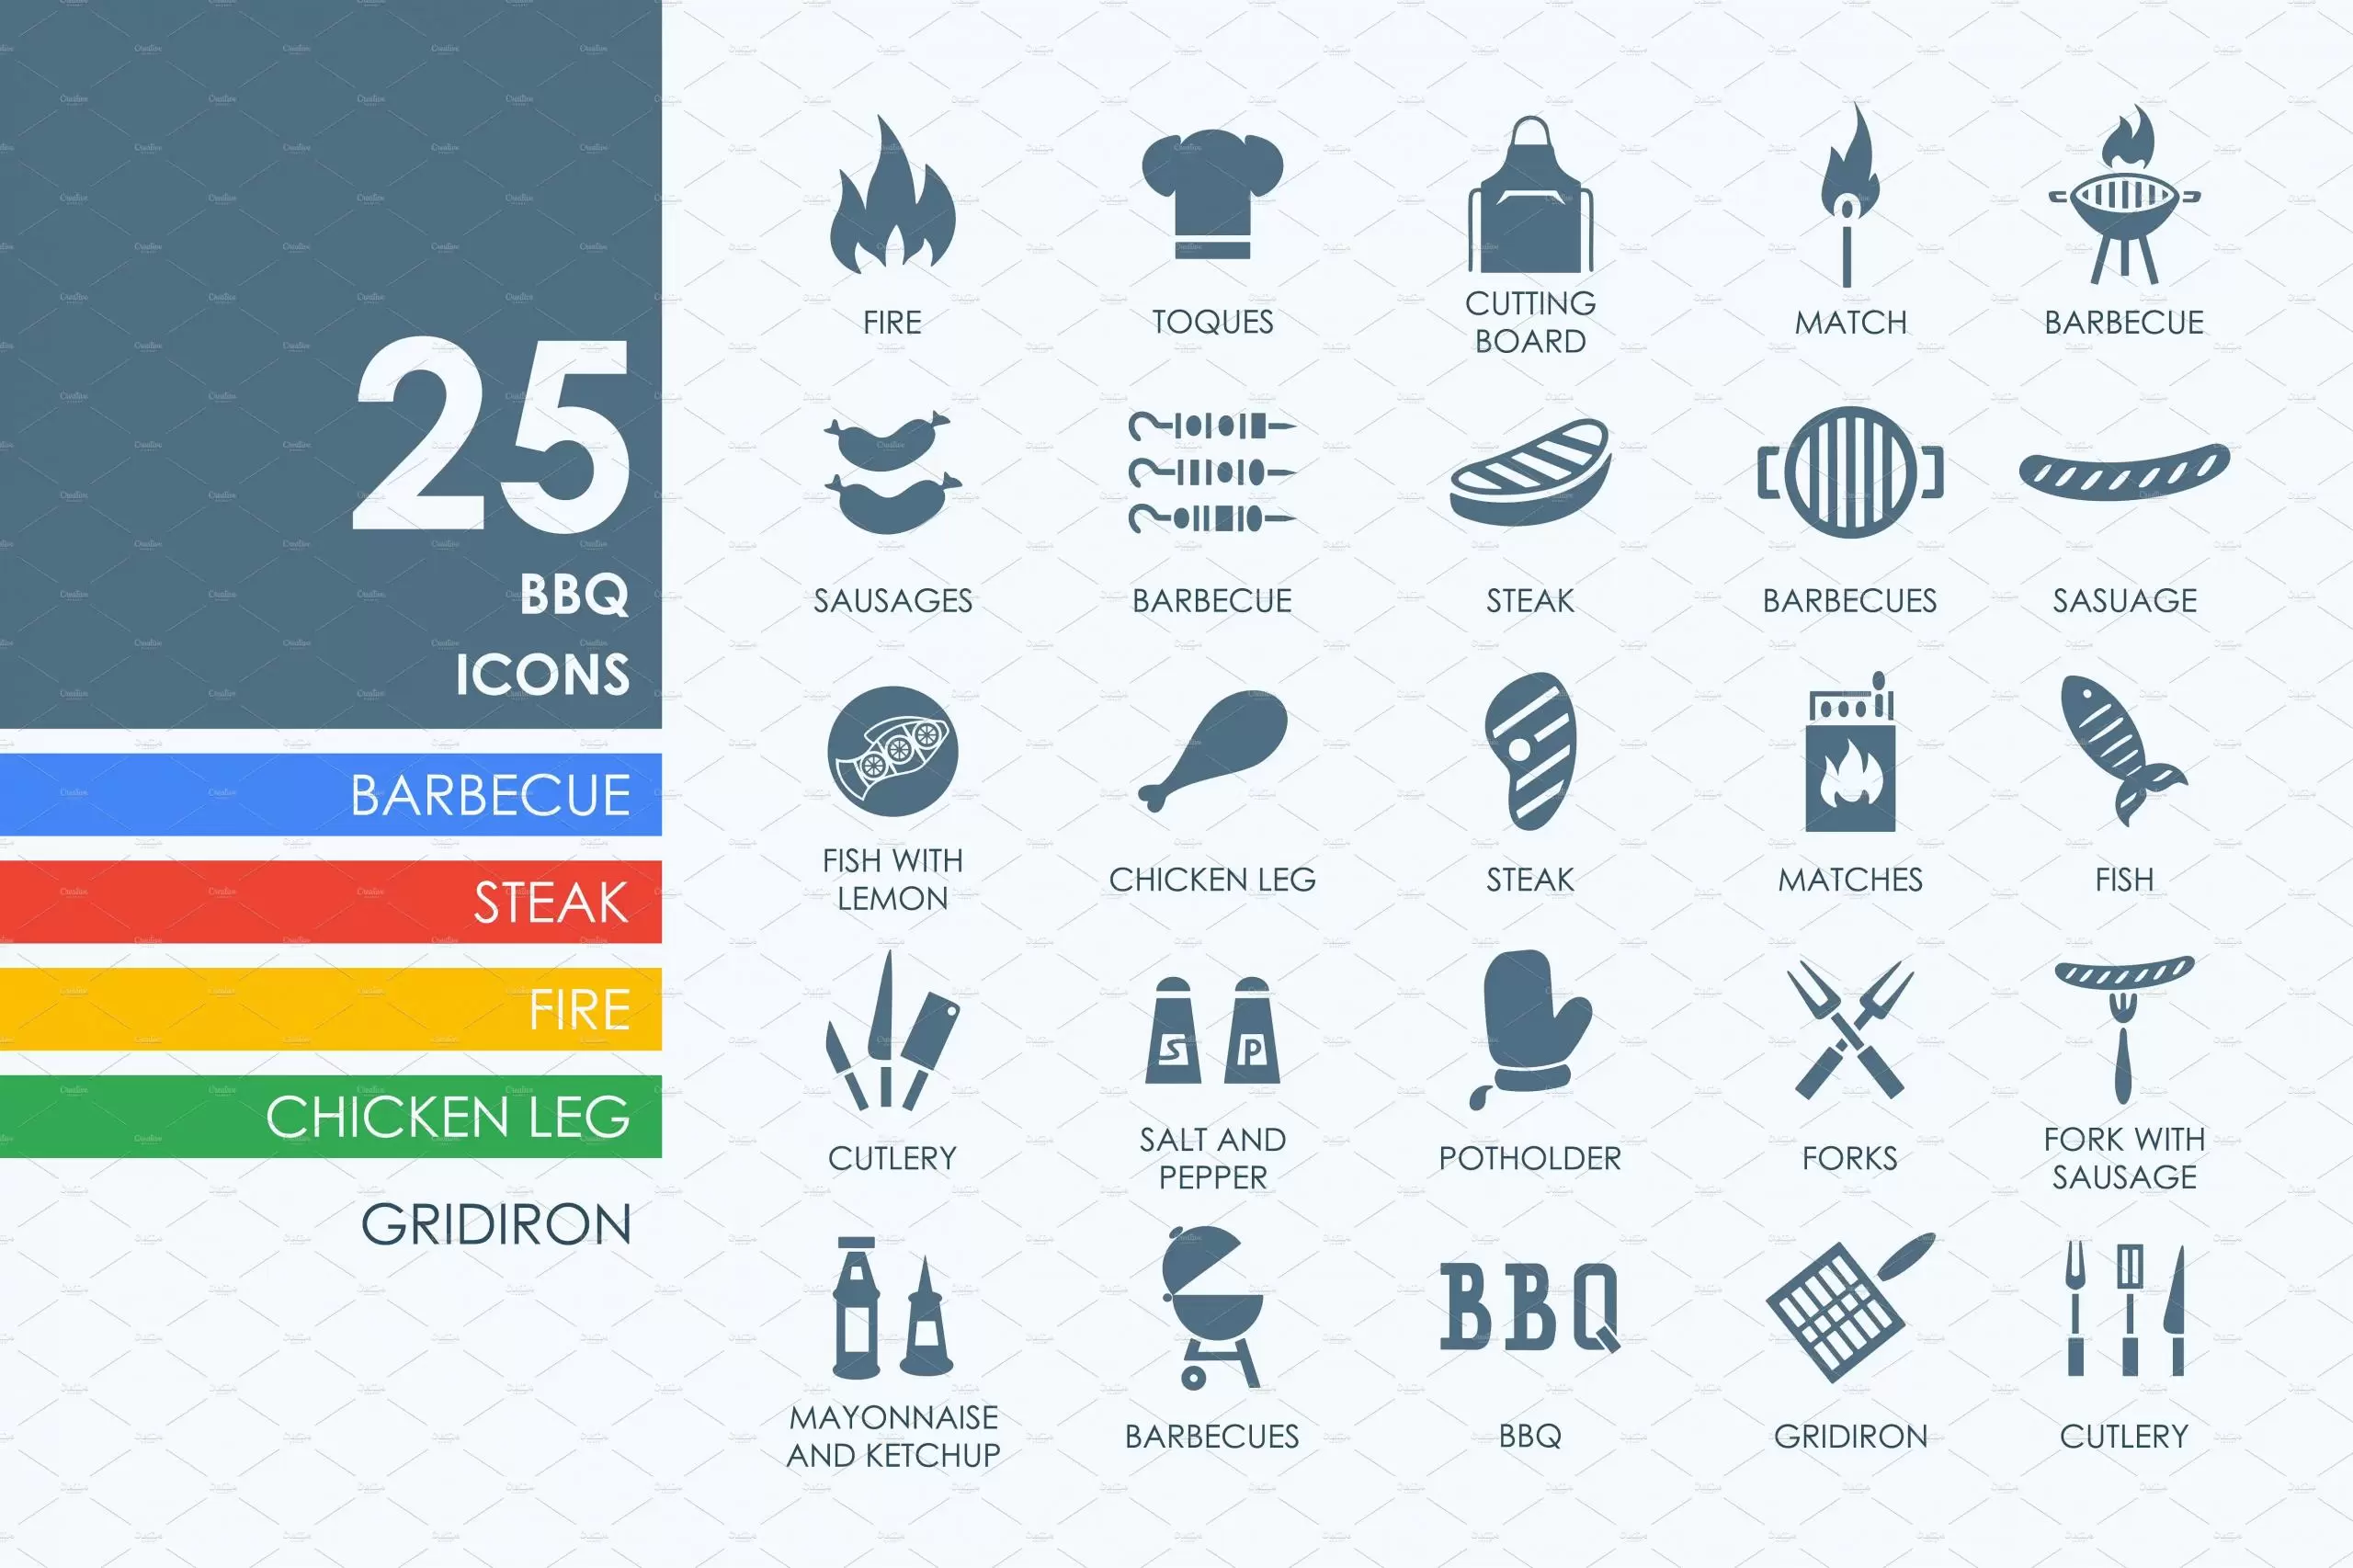 烧烤材料图标素材 25 BBQ icons插图